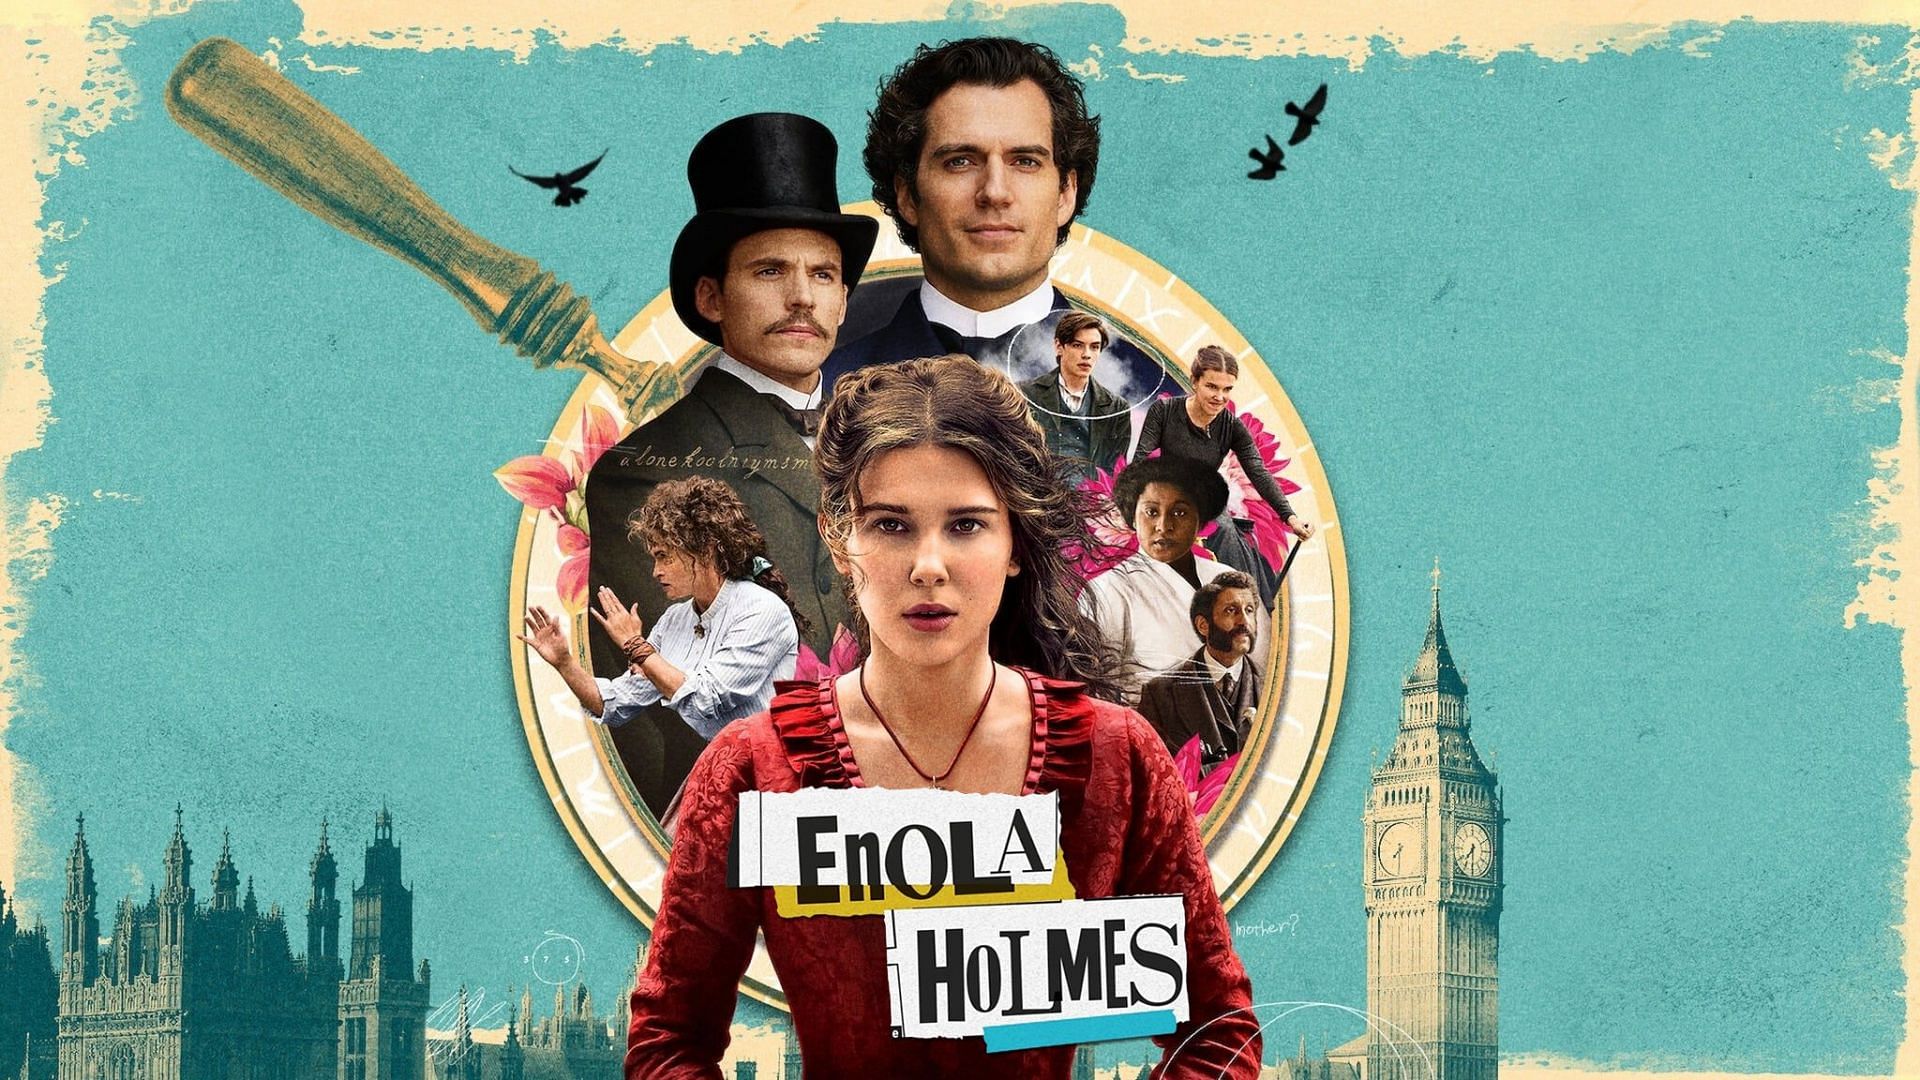 Enola Holmes (Image via Netflix)